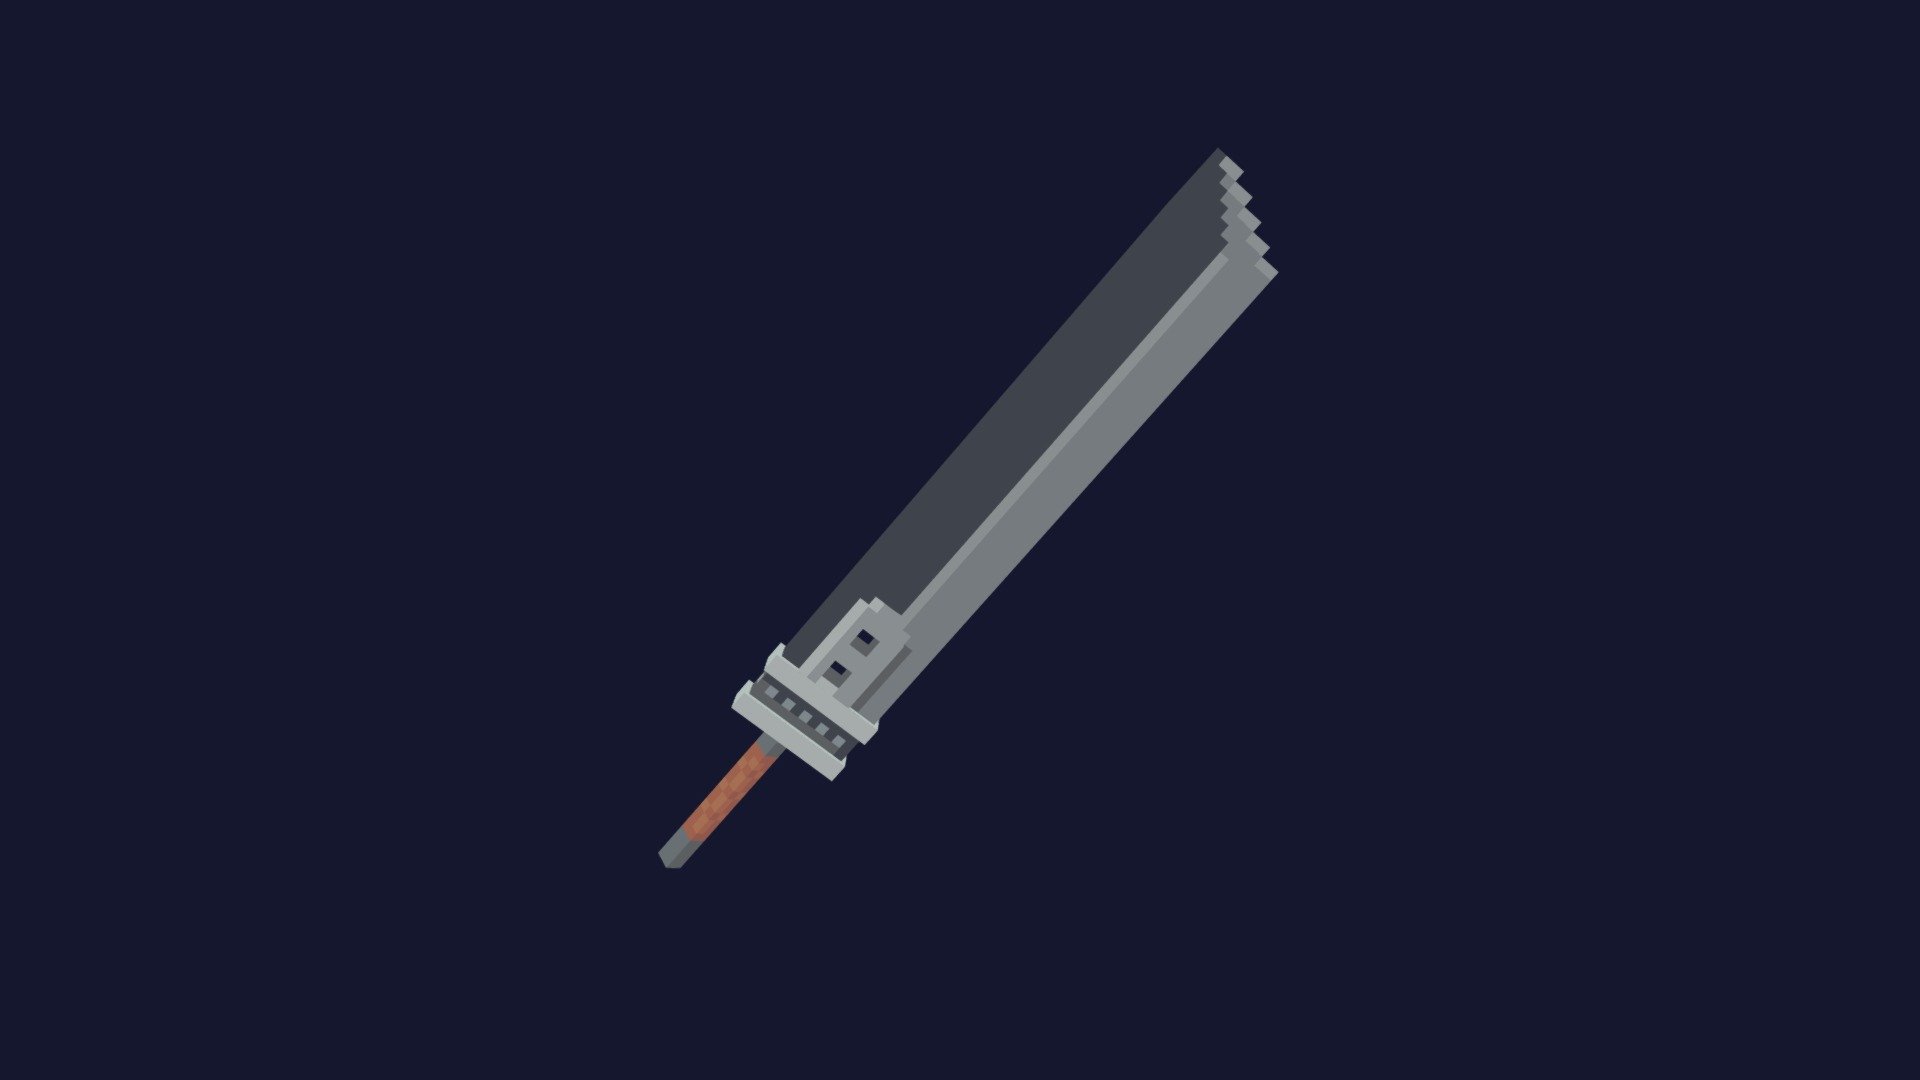 pixel art sword